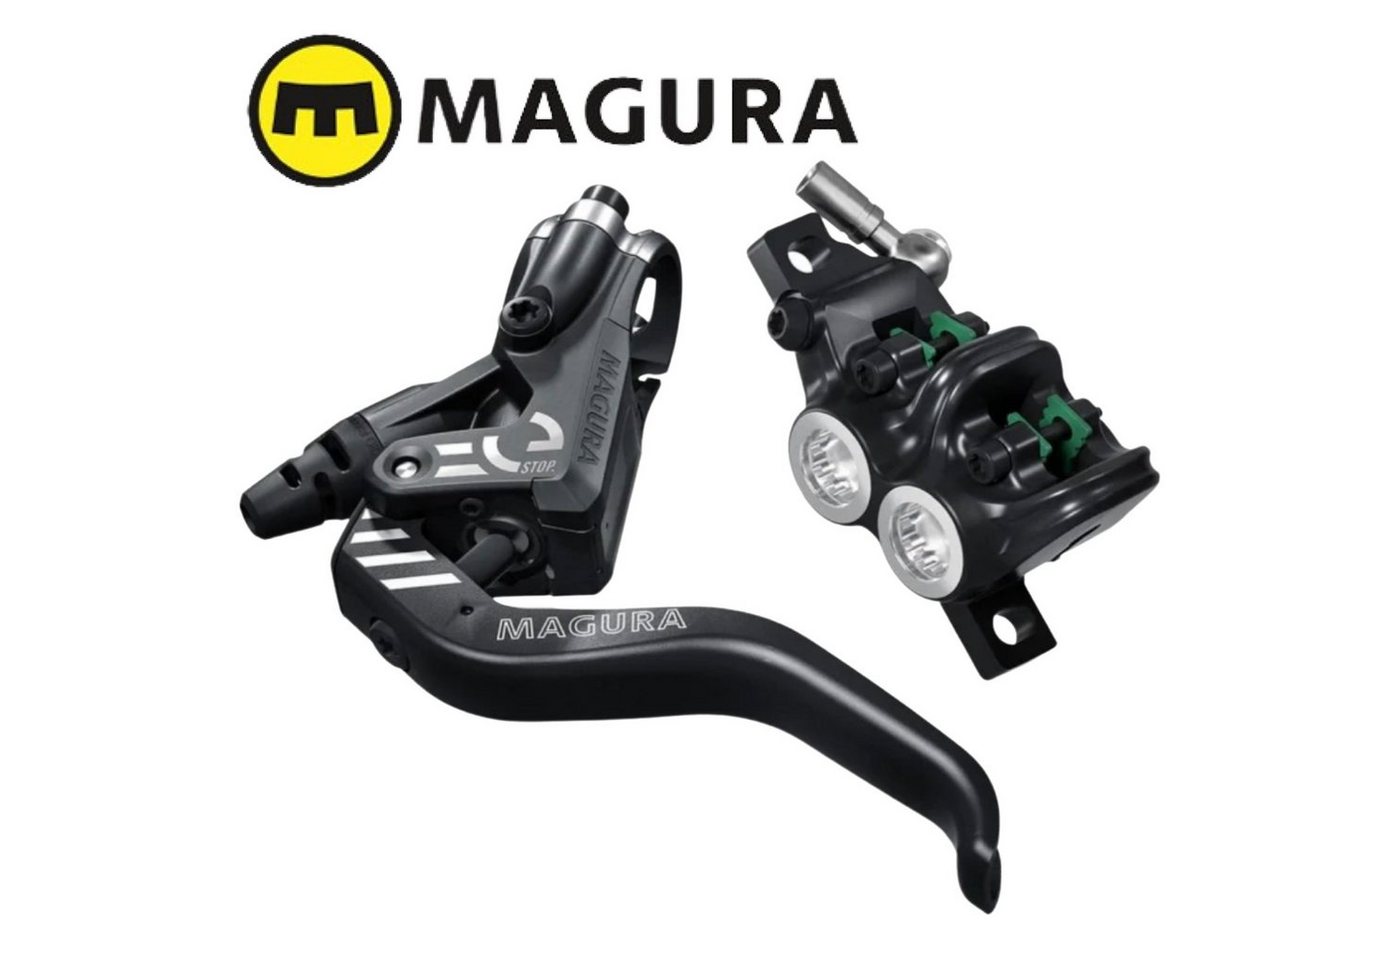 Magura Scheibenbremse Magura MT5 eStop Bremse mit 2-Finger Aluminium-Leichtbau-Hebel von Magura